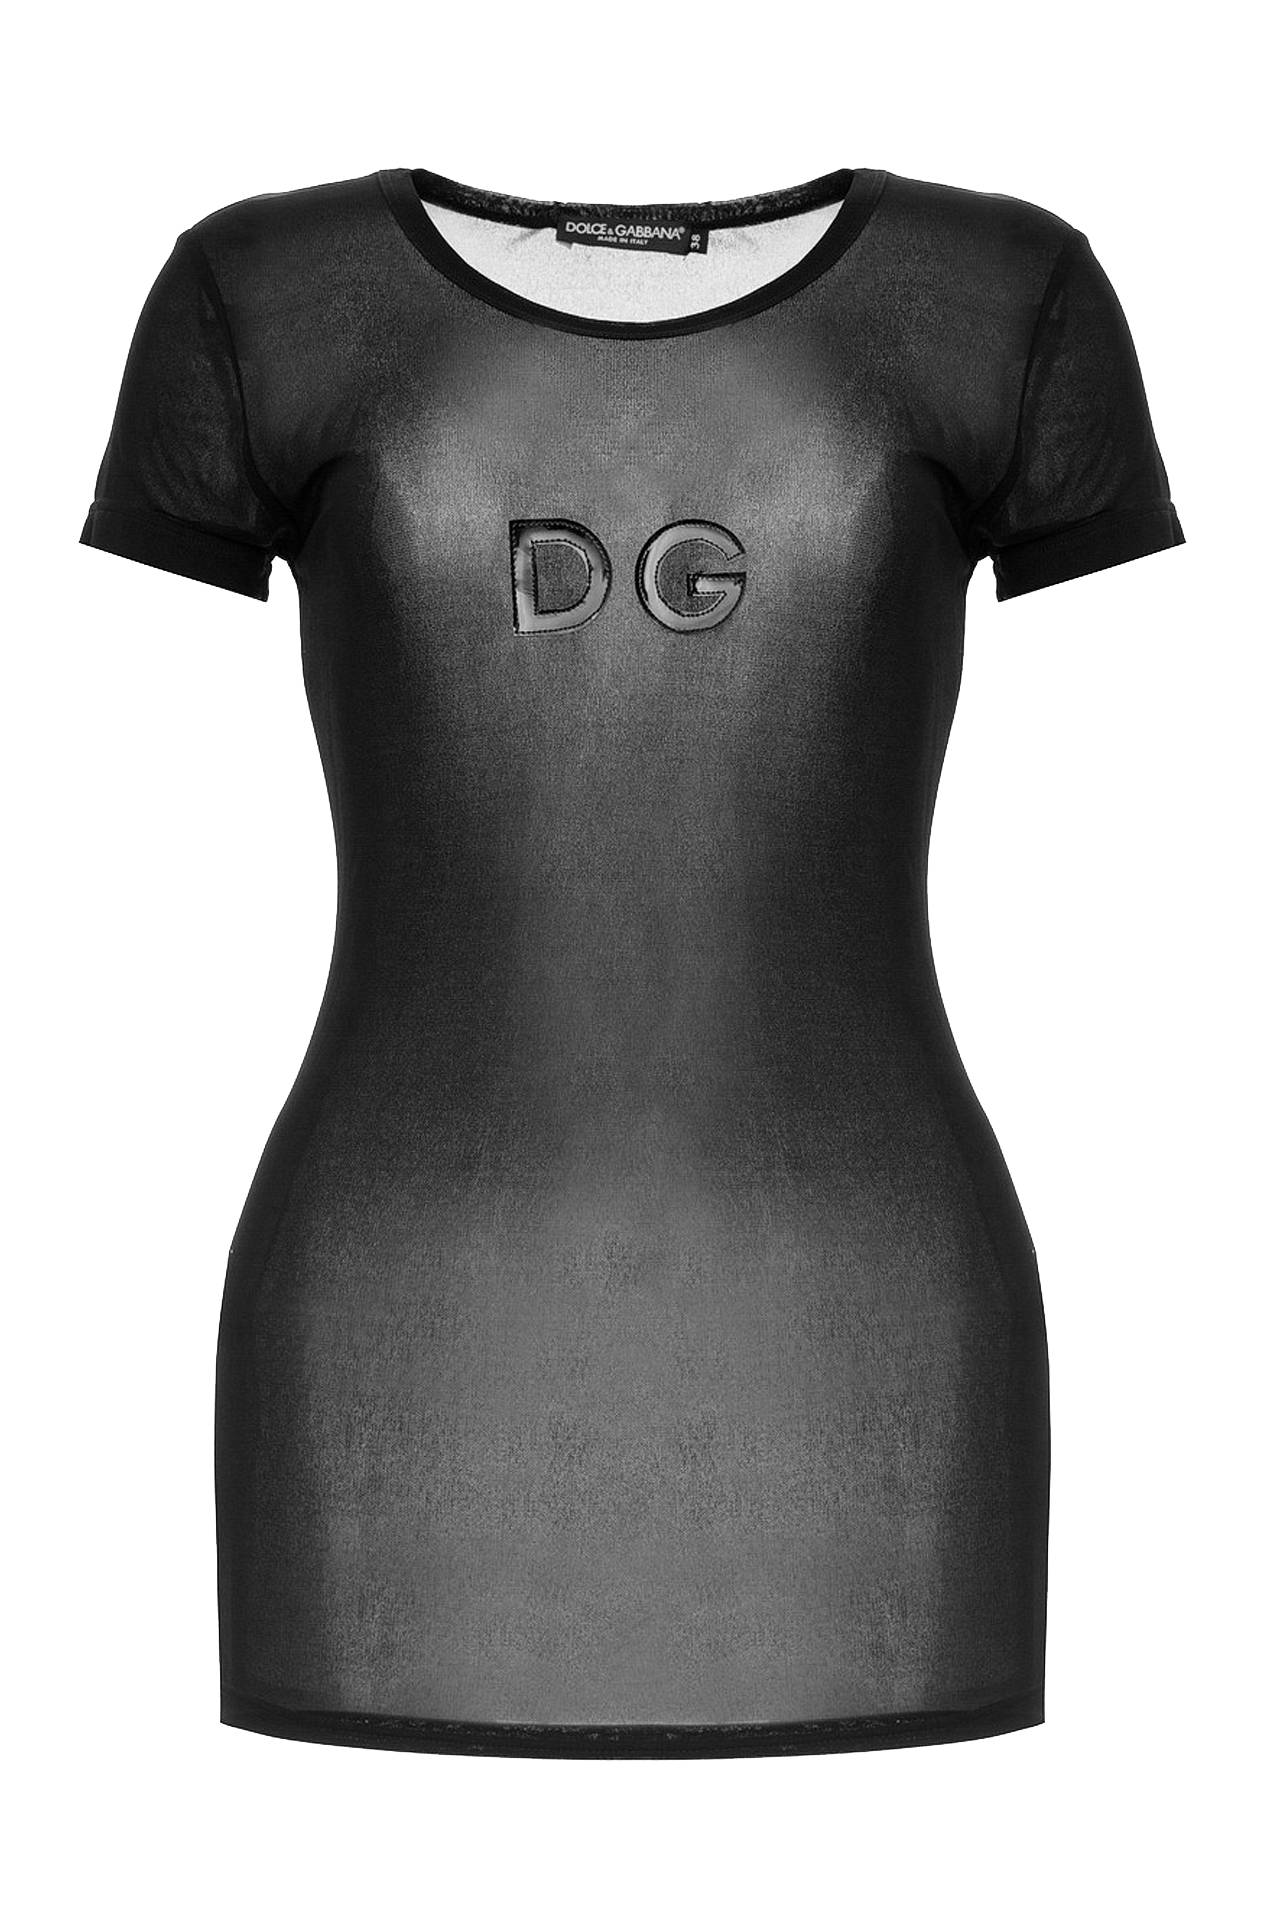 Одежда женская Футболка DOLCE & GABBANA (JTF8420TG7593/0010). Купить за 7770 руб.